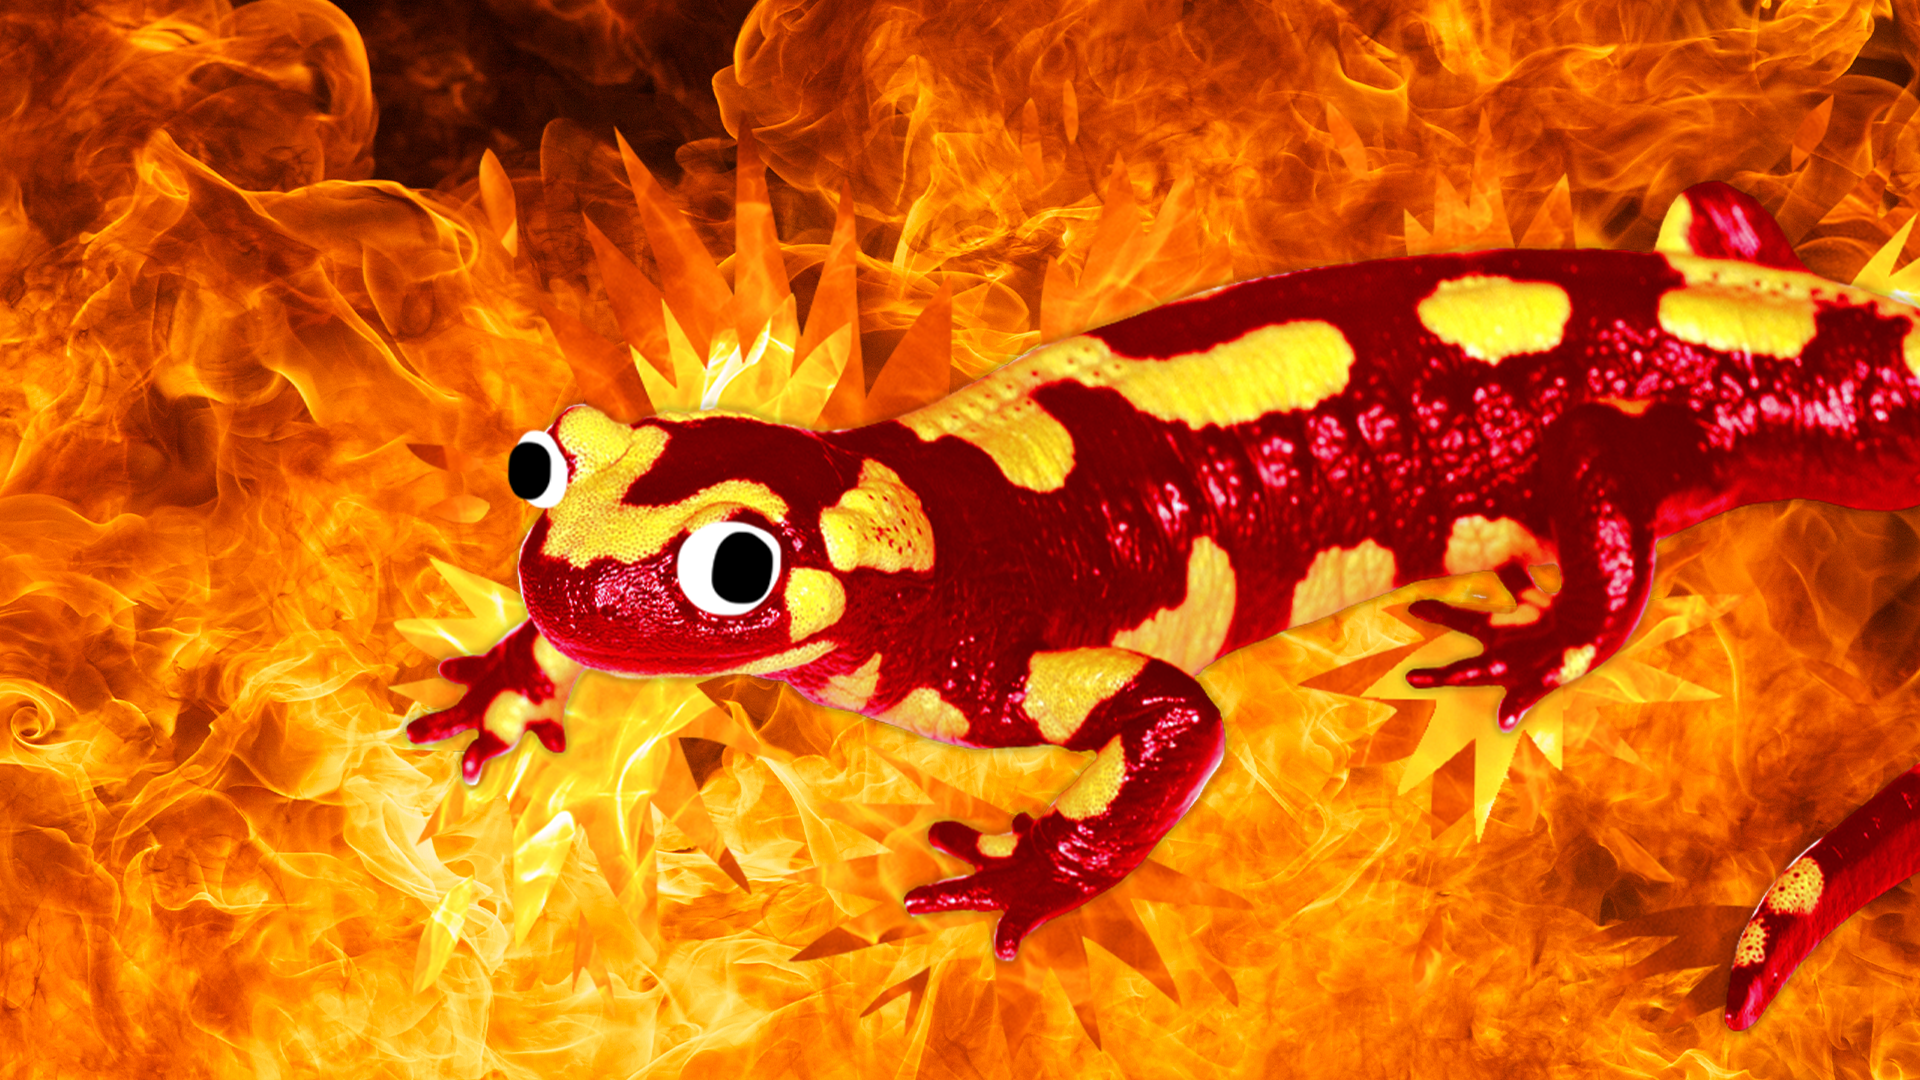 Beano salamander in fire